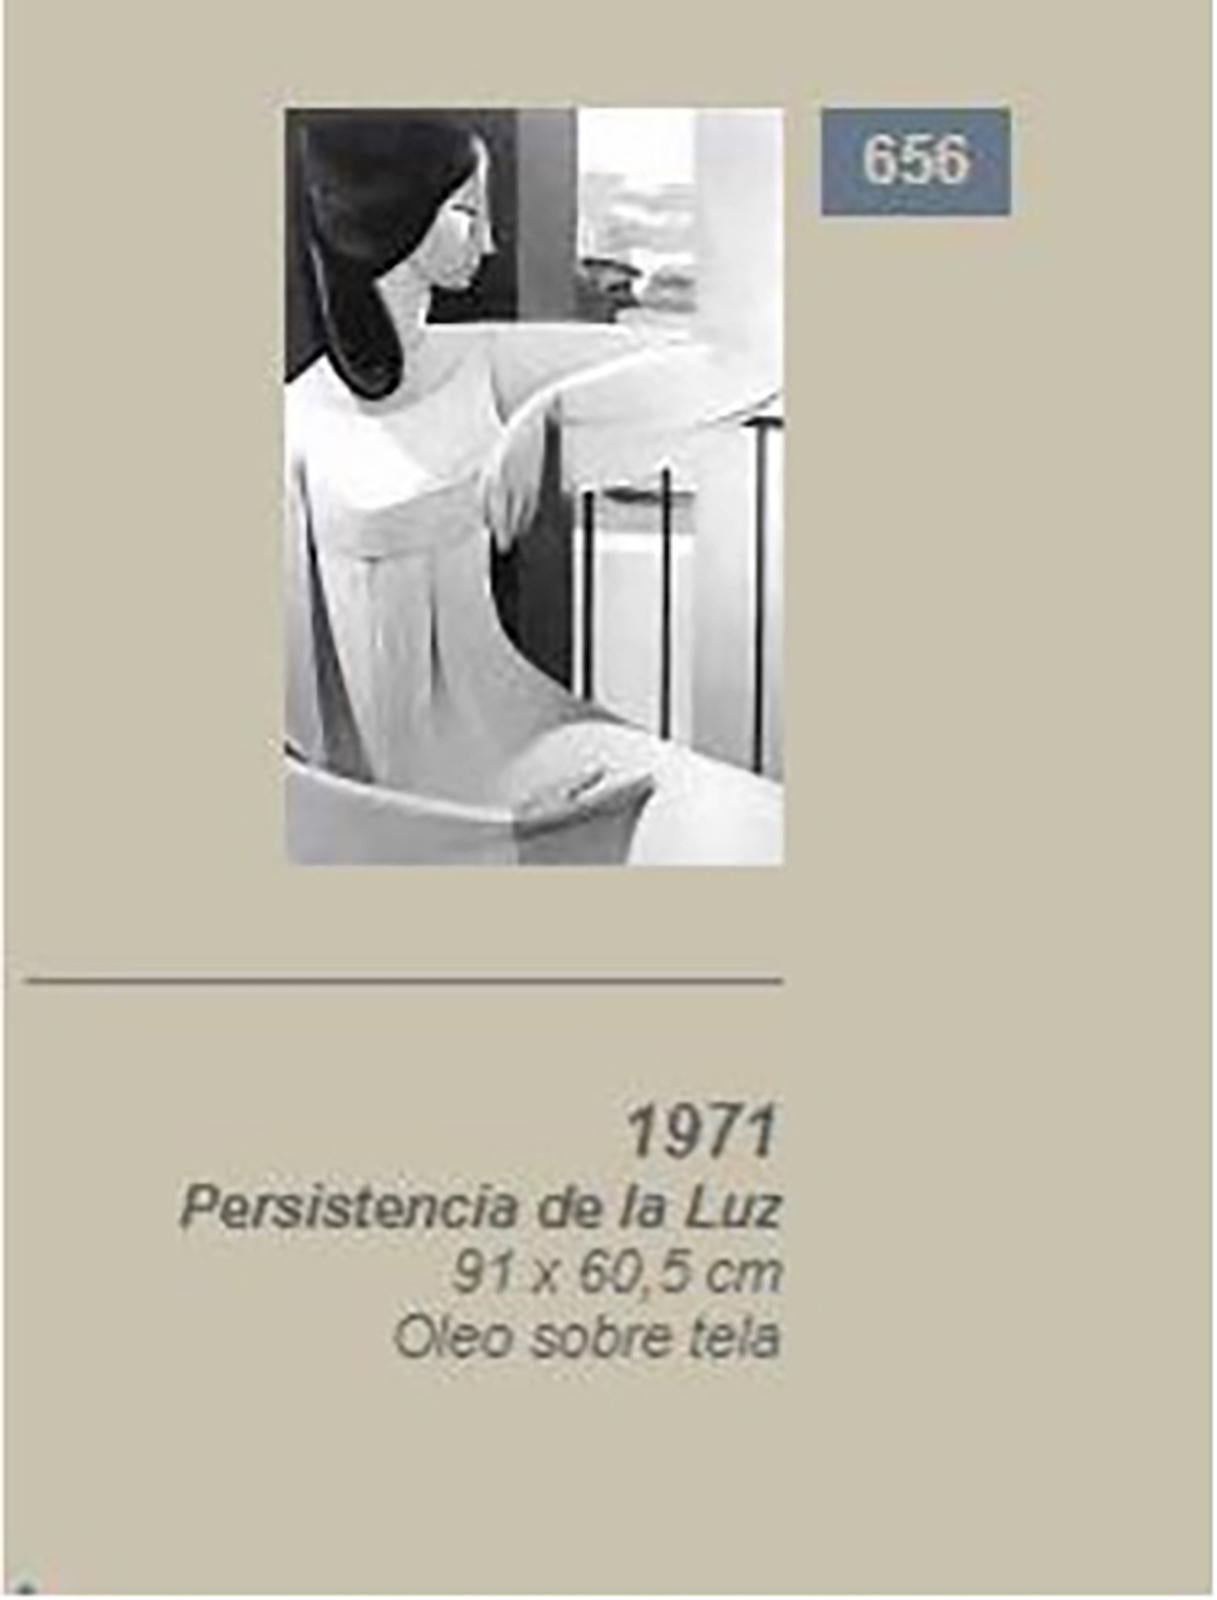 Armando Barrios, La Persistencia de la luz, 1971, Oil on canvas, 91 x 60, 5 cm 5